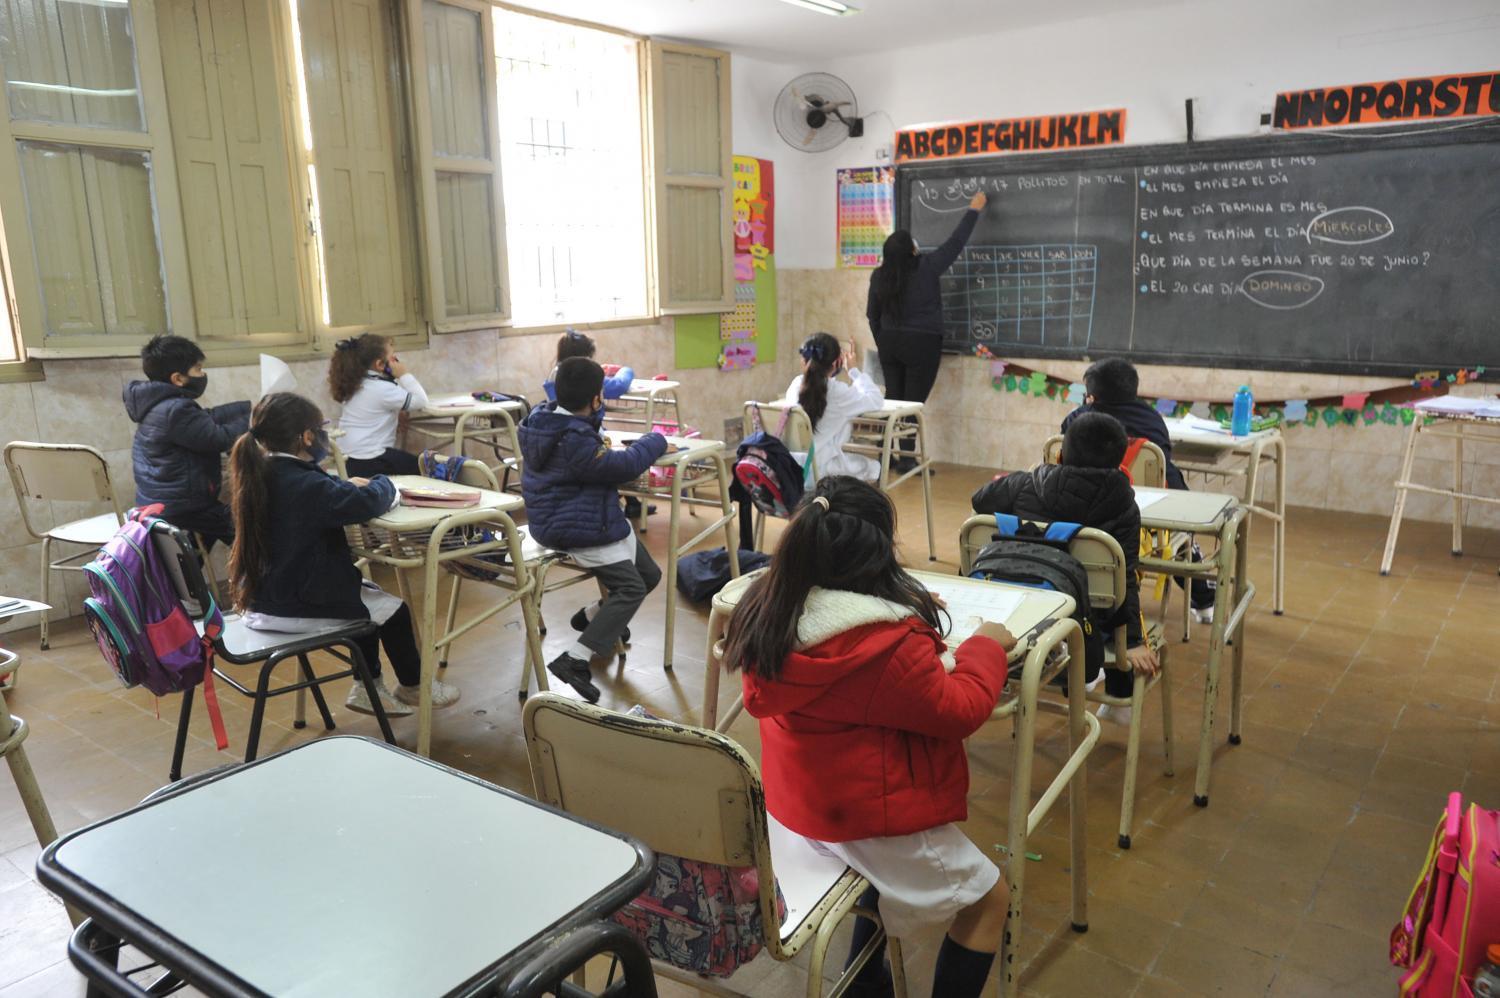  Por qué tendría que haber una hora más de clases en las escuelas de Tucumán